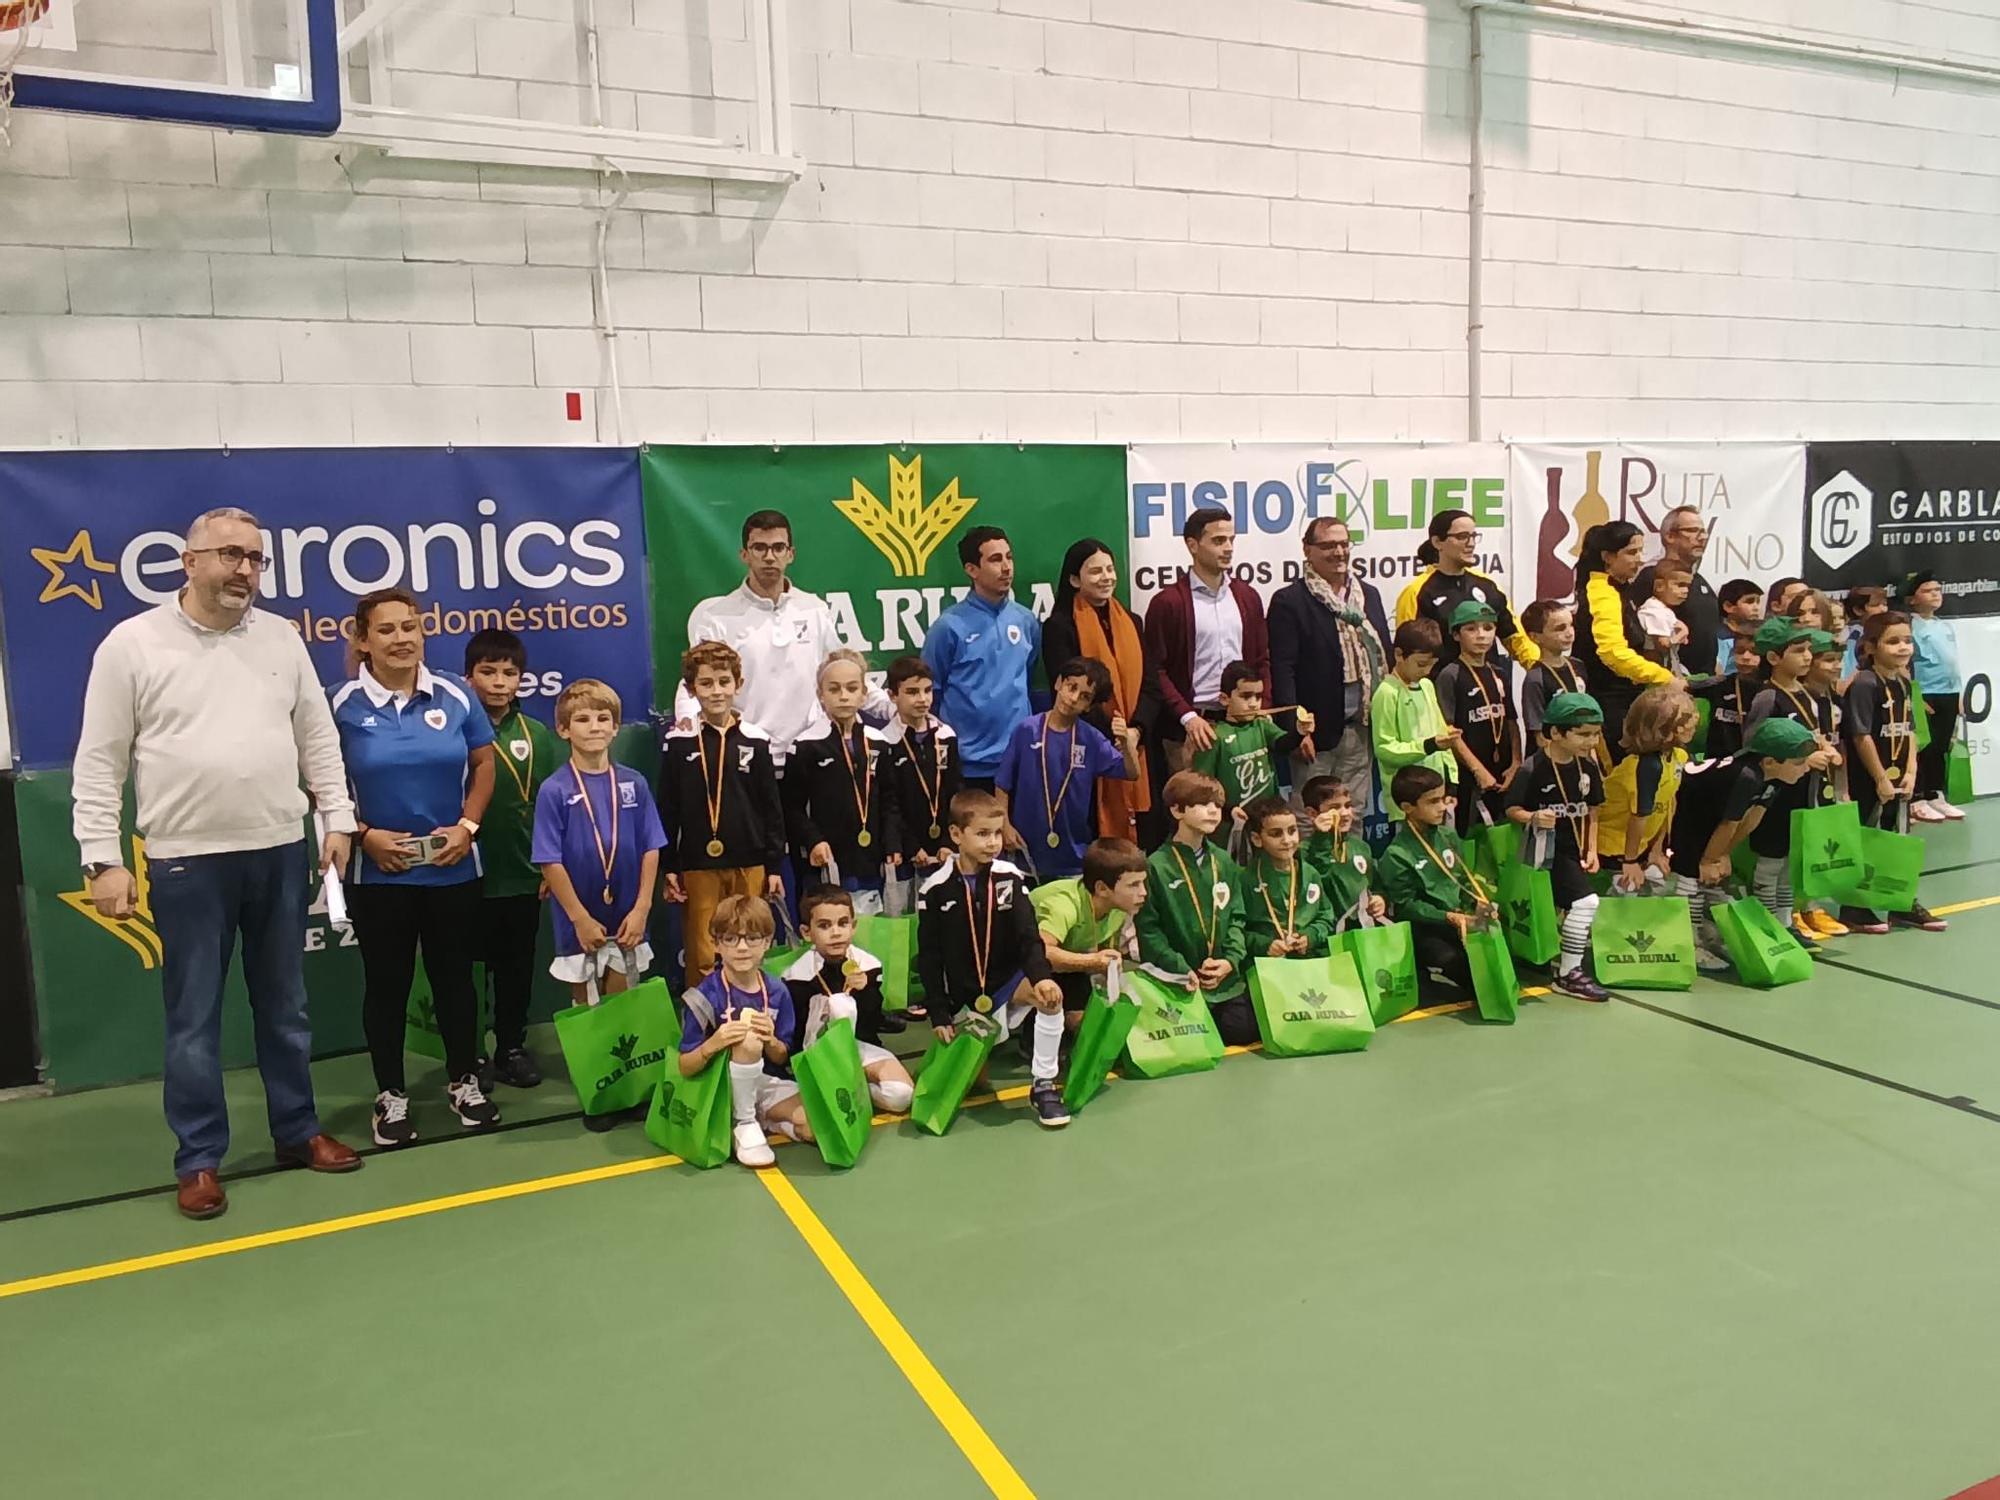 GALERÍA | El IV Trofeo de Fútbol Sala Diputación de Zamora, en imágenes